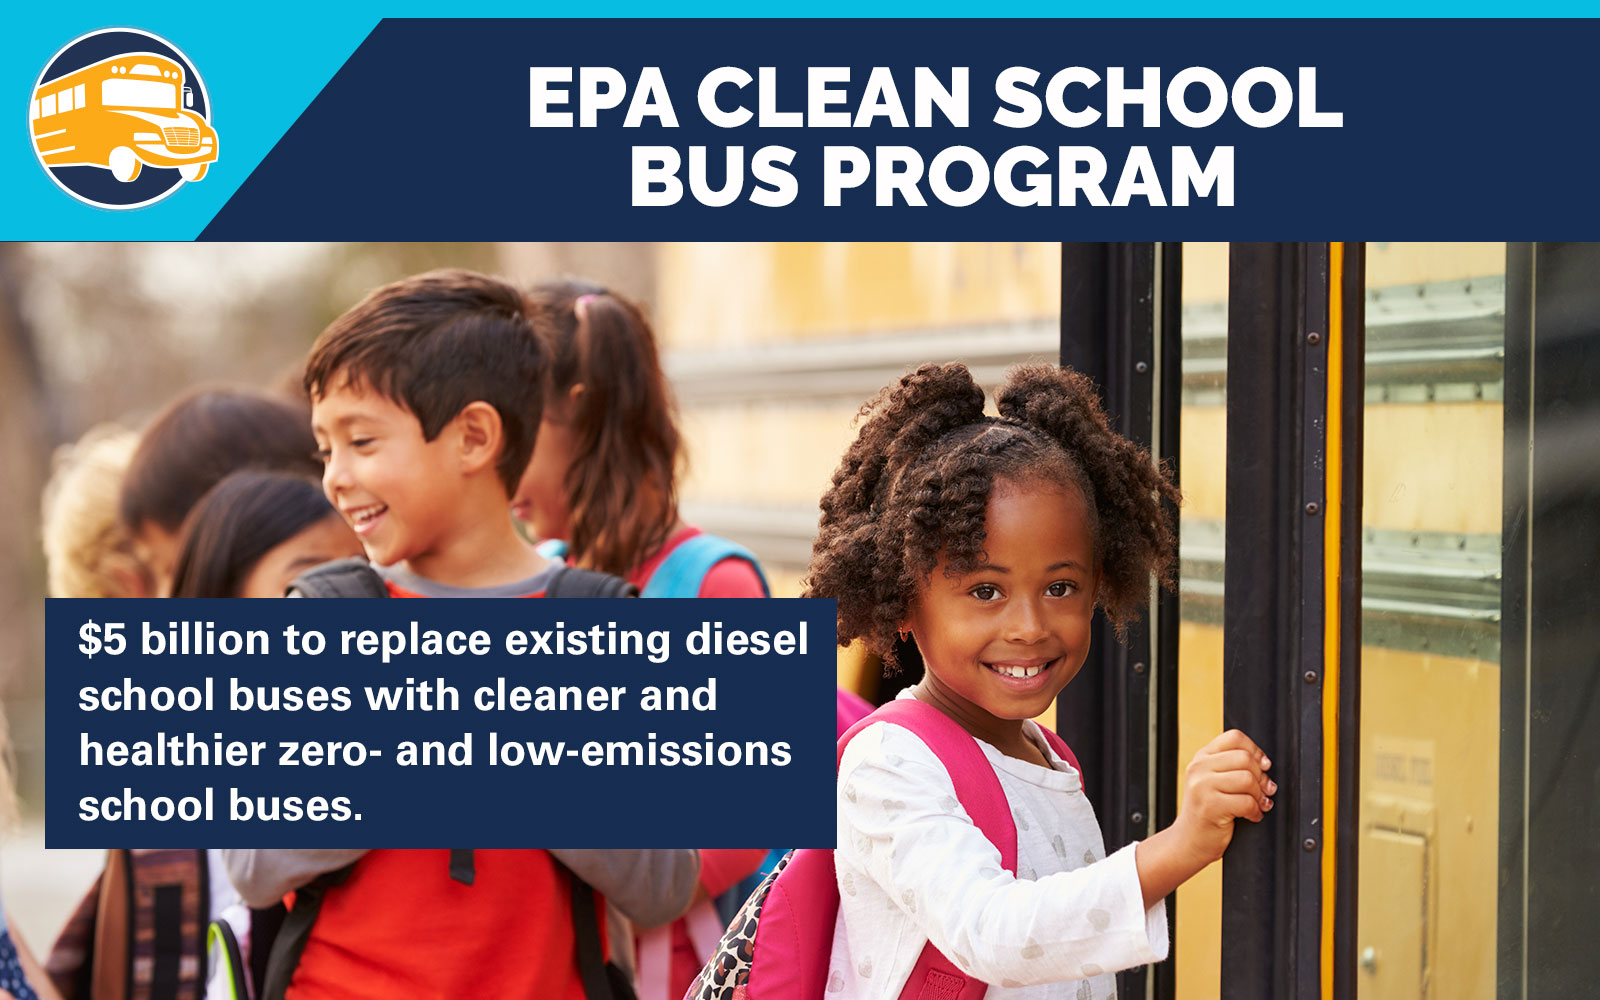 Photo of children outside a school bus door. Flyer of the EPA Clean School Bus Program